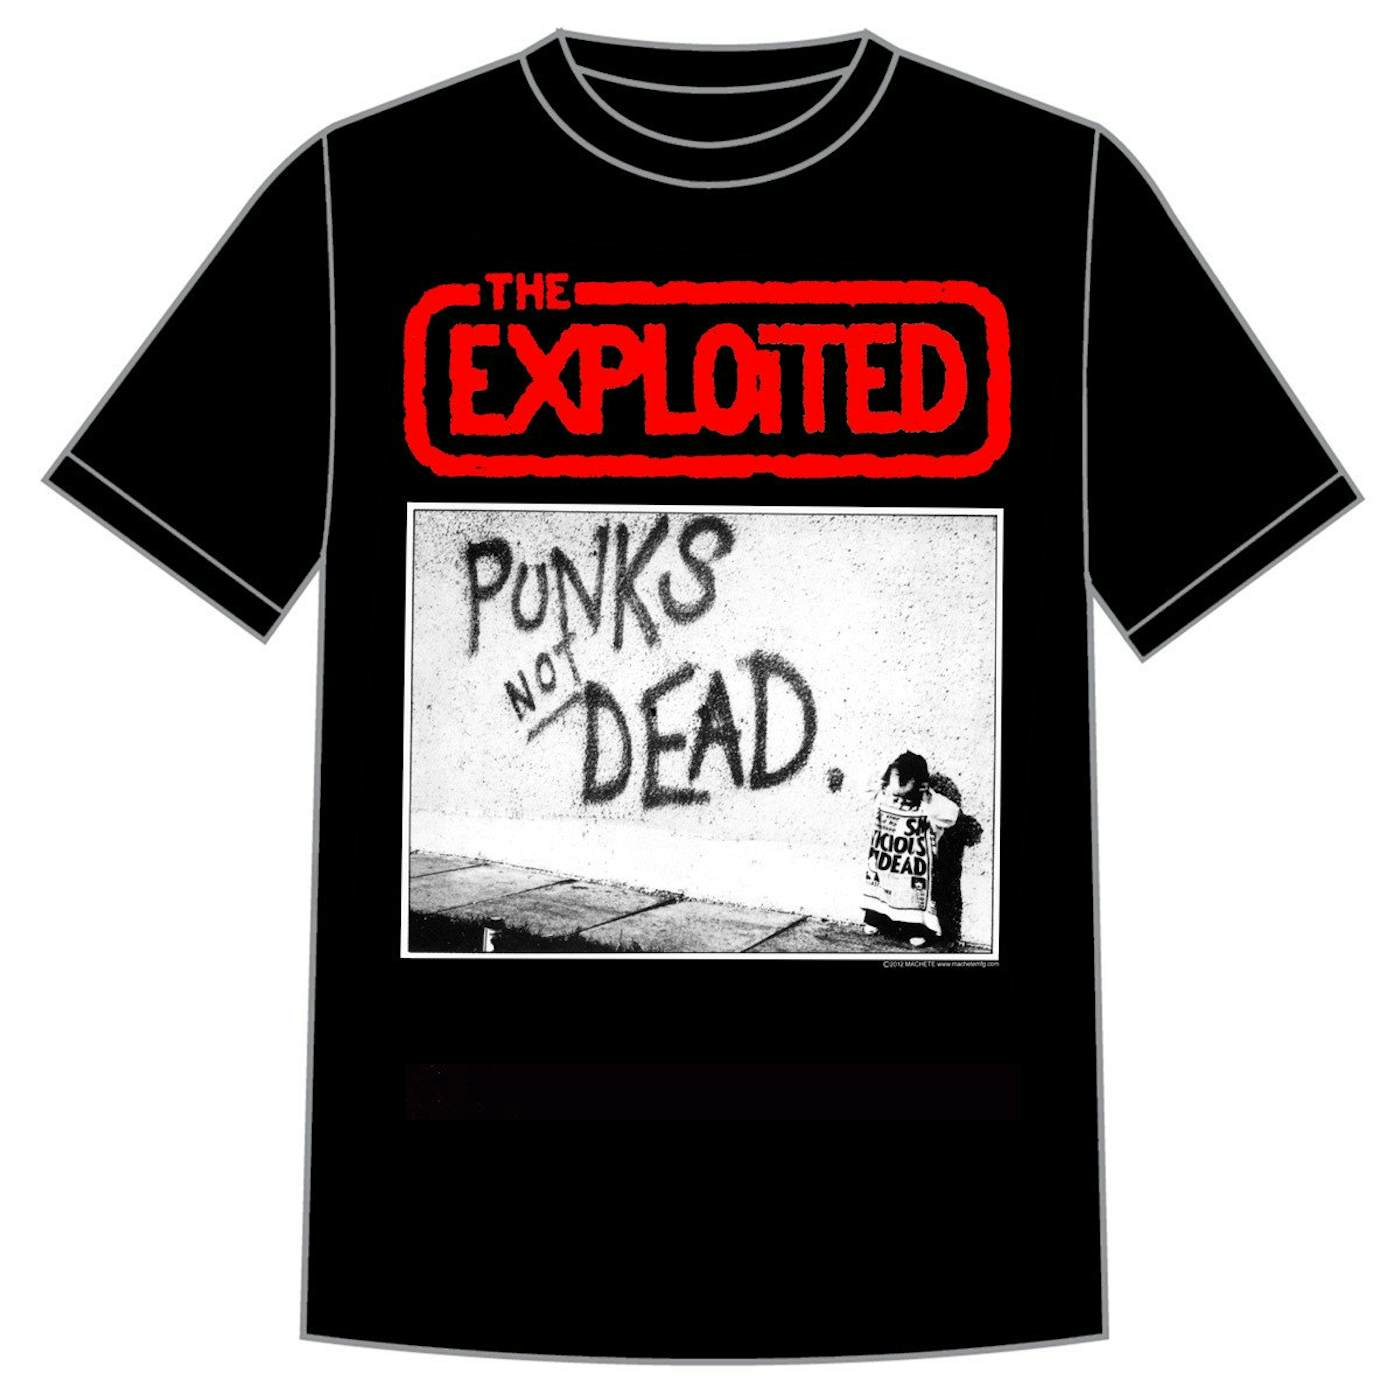 The Exploited "Punks Not Dead" Shirt